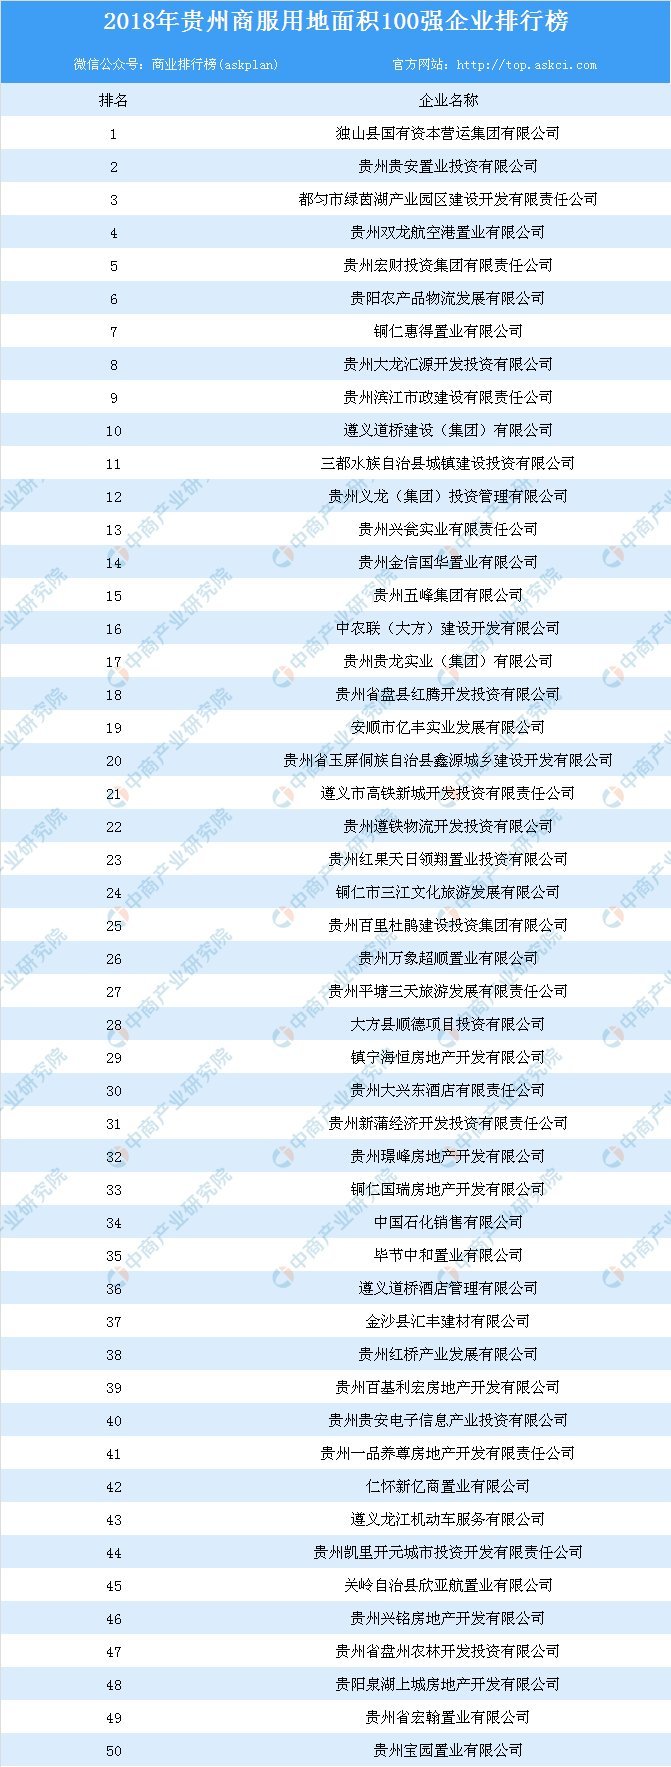 商业地产招商情报:2018年贵州省商服用地面积